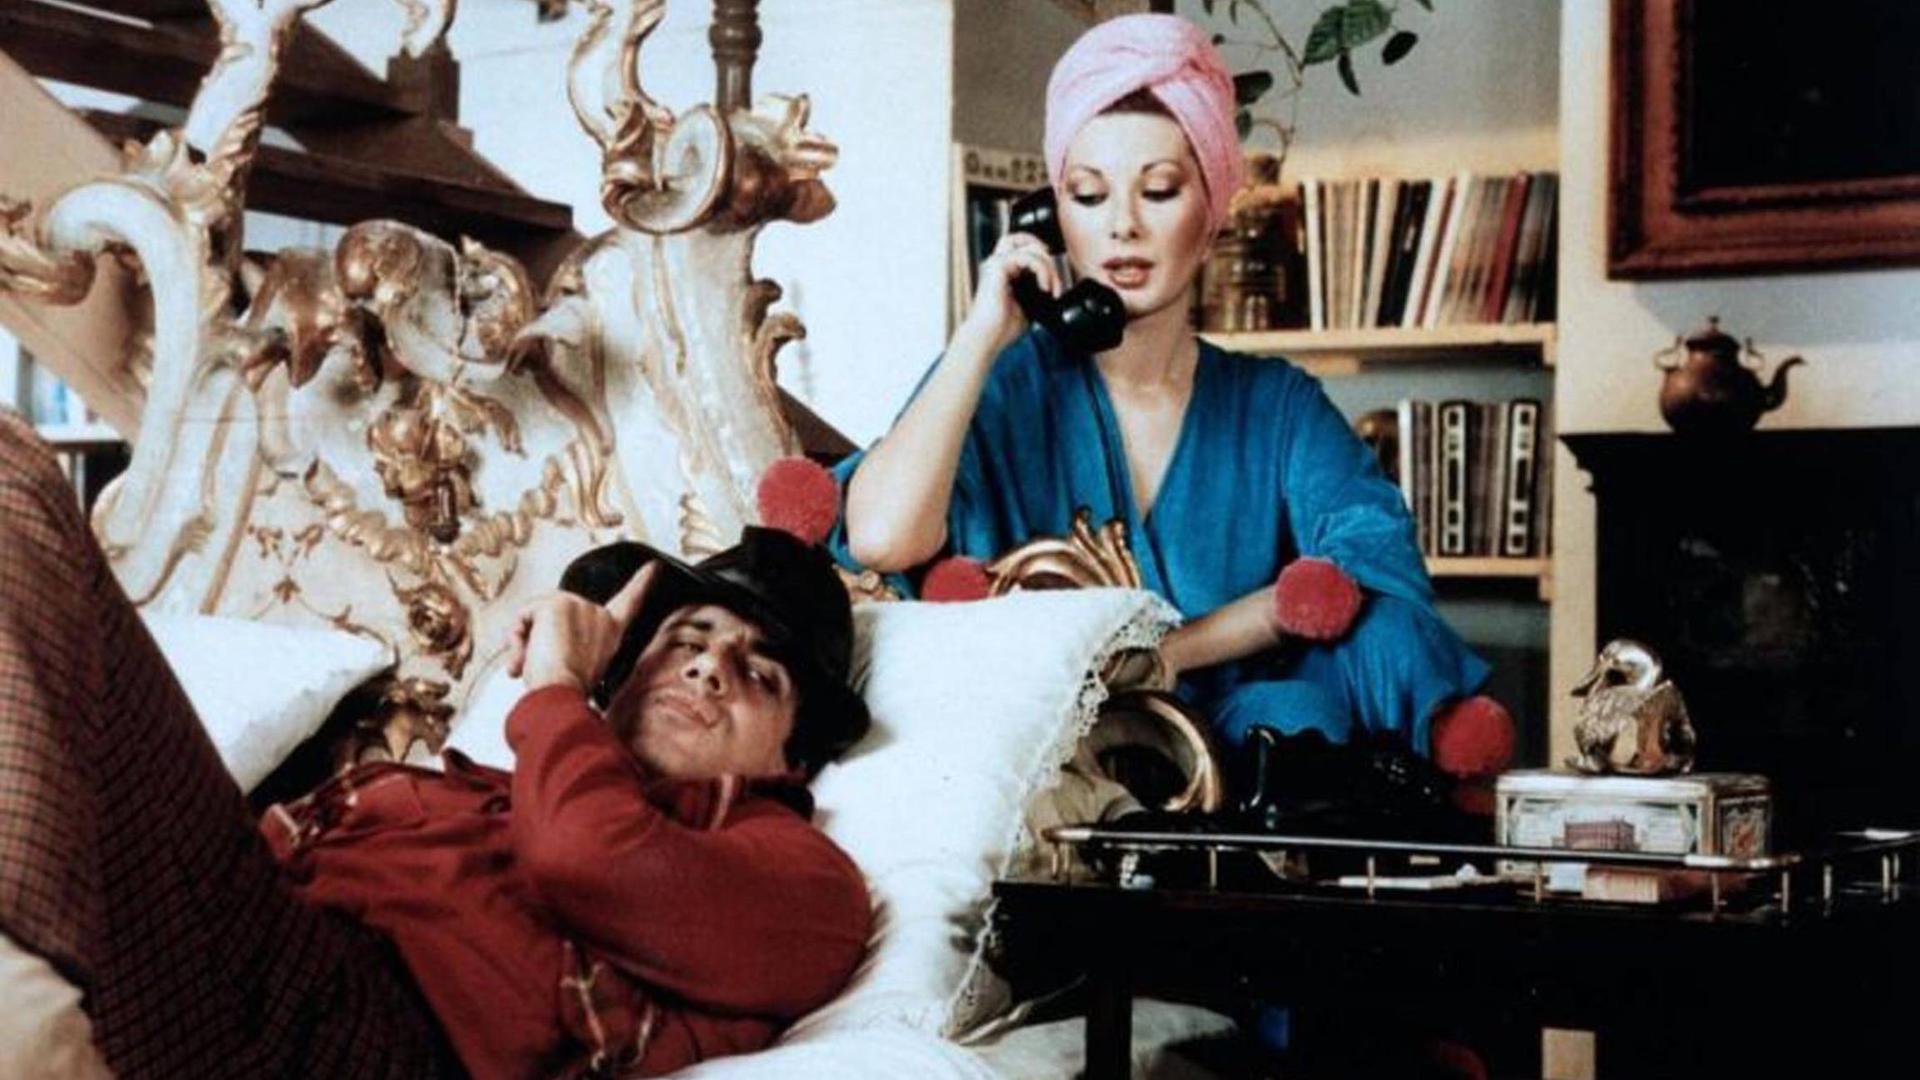 Italienischer Sänger und Schauspieler Adriano Celentano in der Filmszene aus "Gib dem Affen Zucker", aufgenommen am 18.12.1981